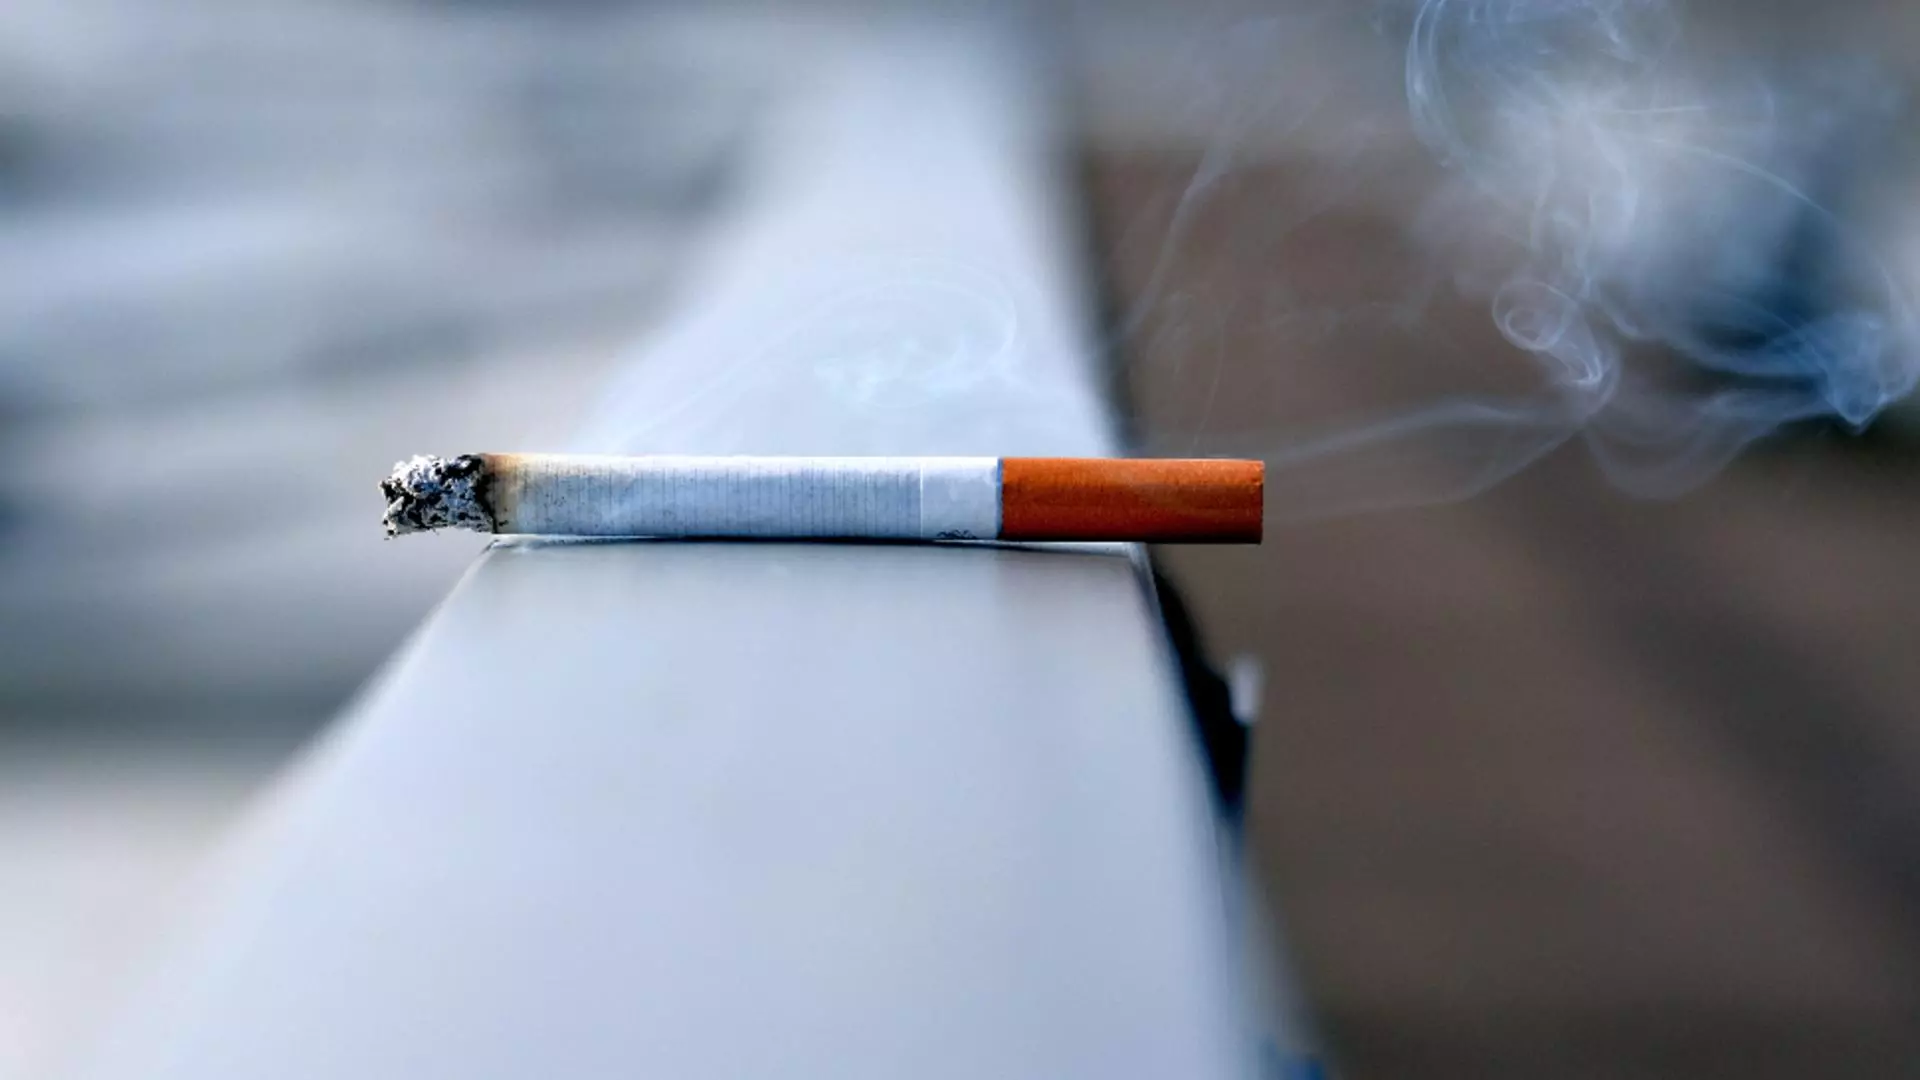 Fumătorii ar putea să-și ia adio de la această...plăcere! Proiect bombă la Senat - Ce RESTRICȚII se pregătesc